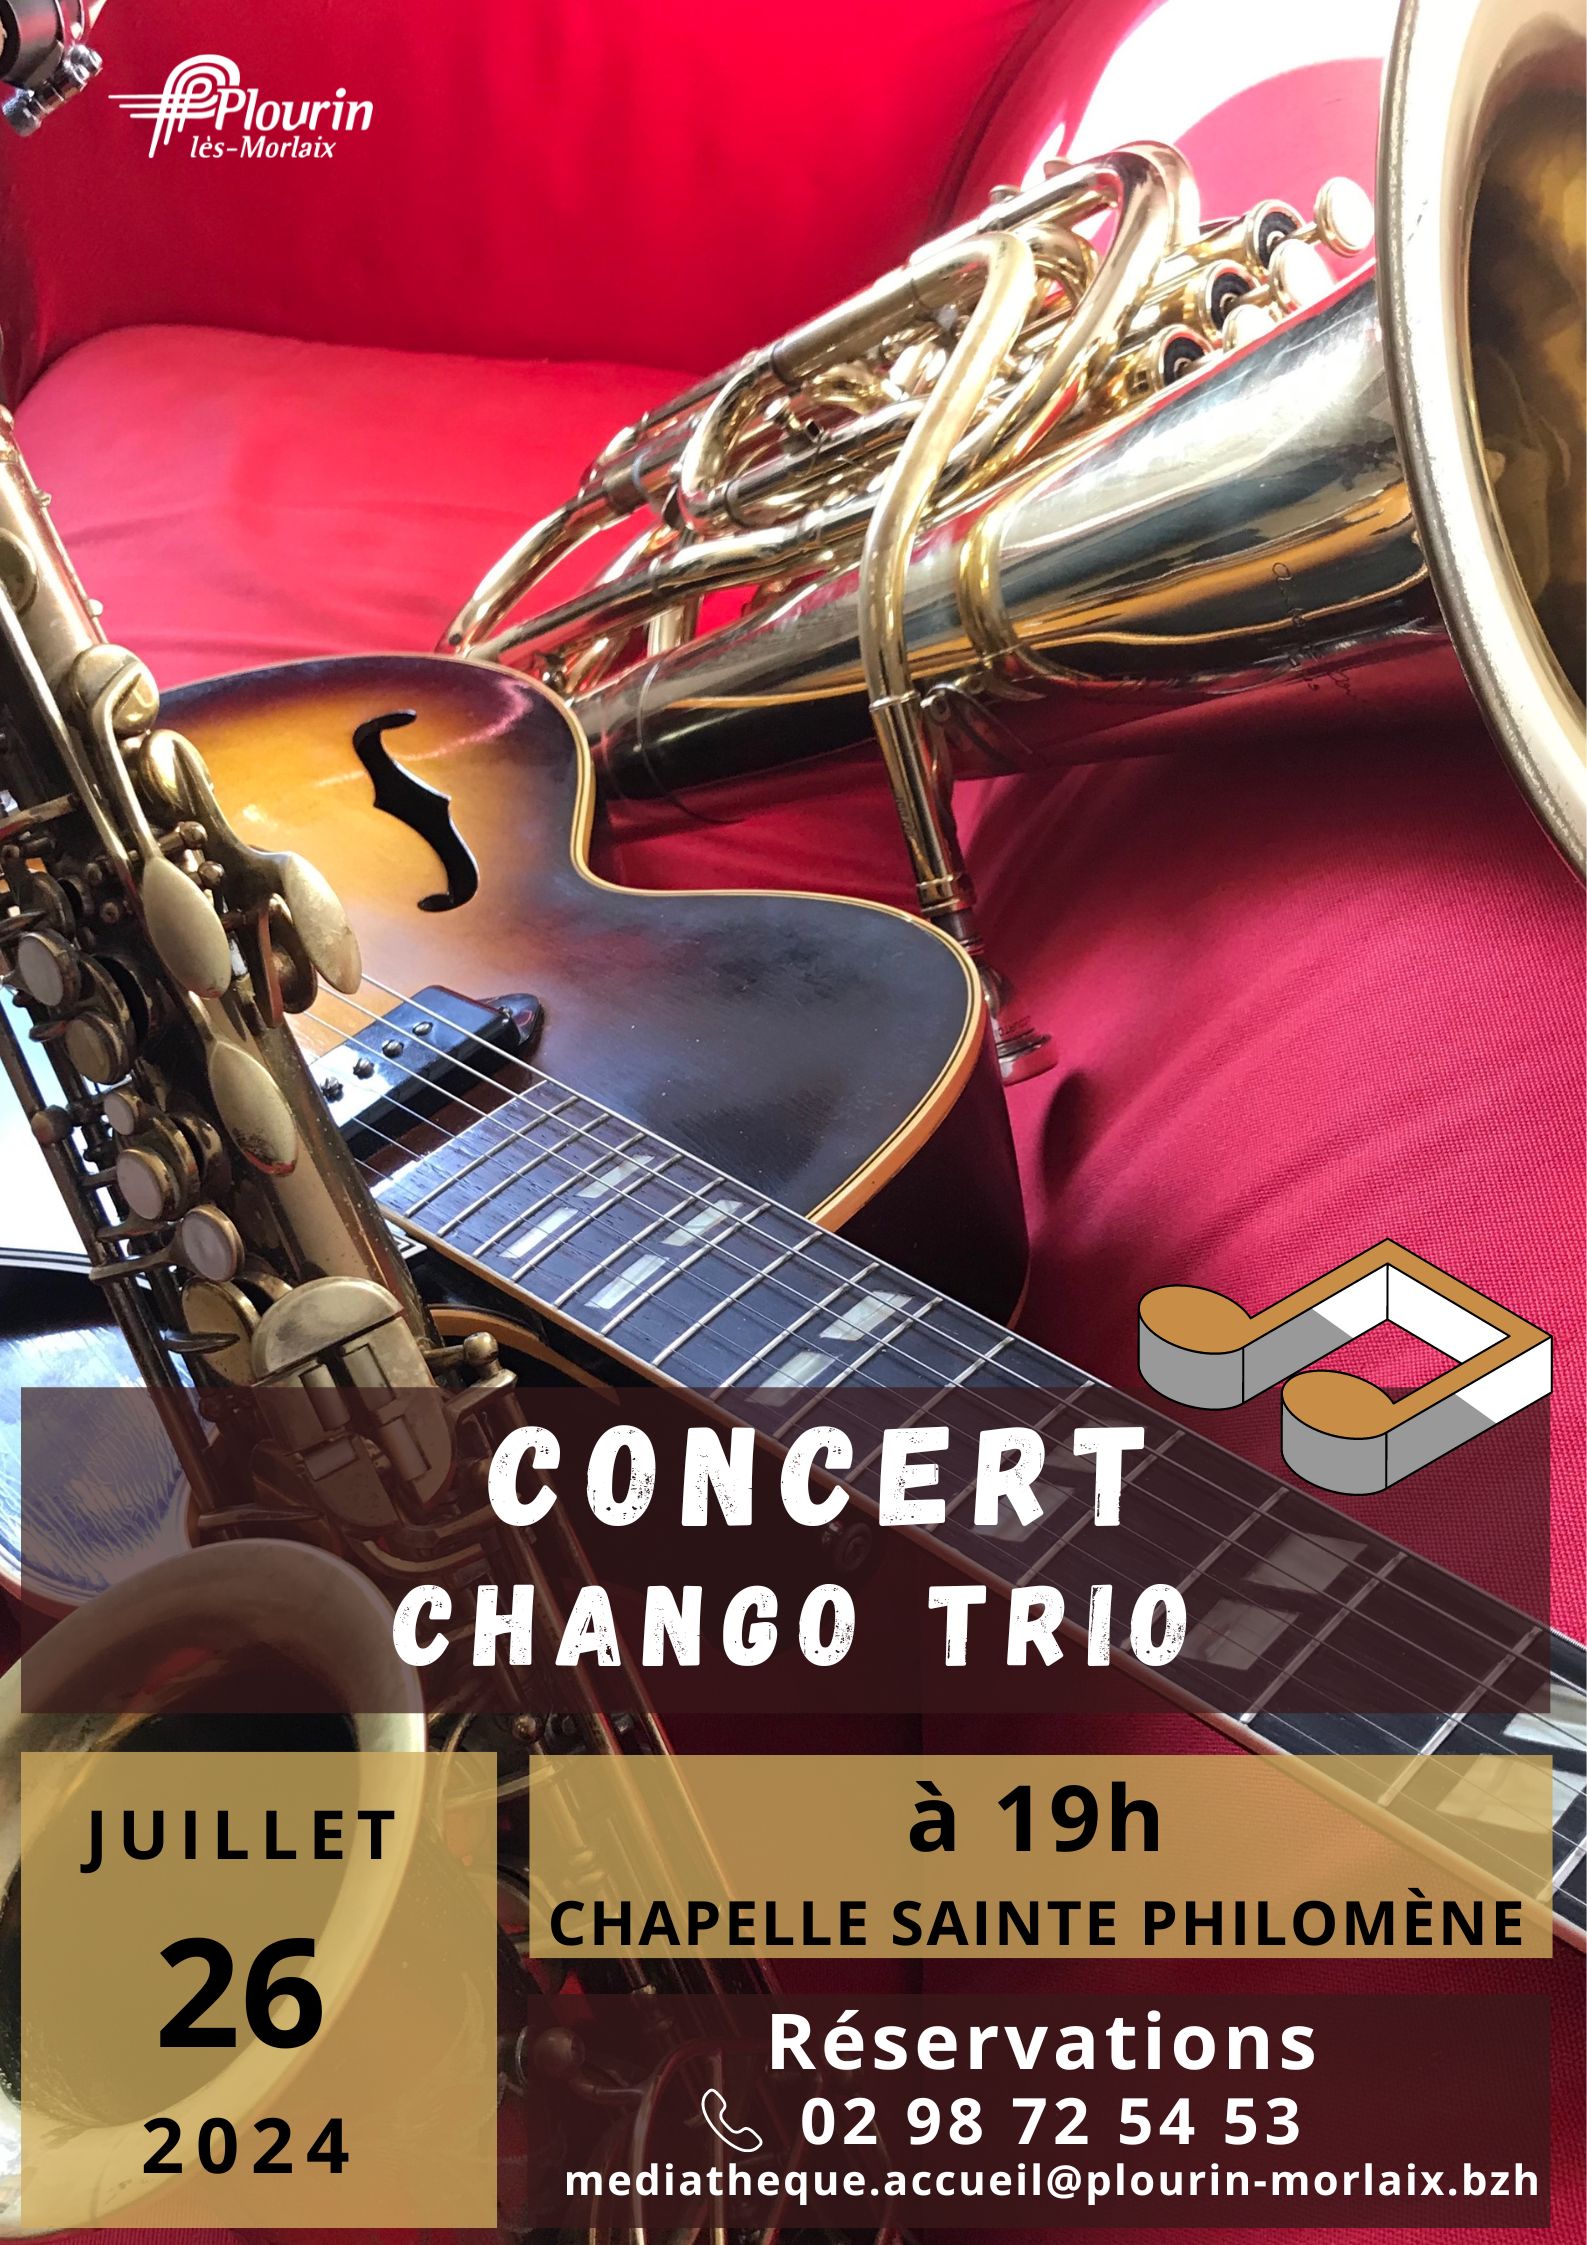 Concert Chango Trio, le 26 Juillet 2024 à la Chapelle Sainte Philomène